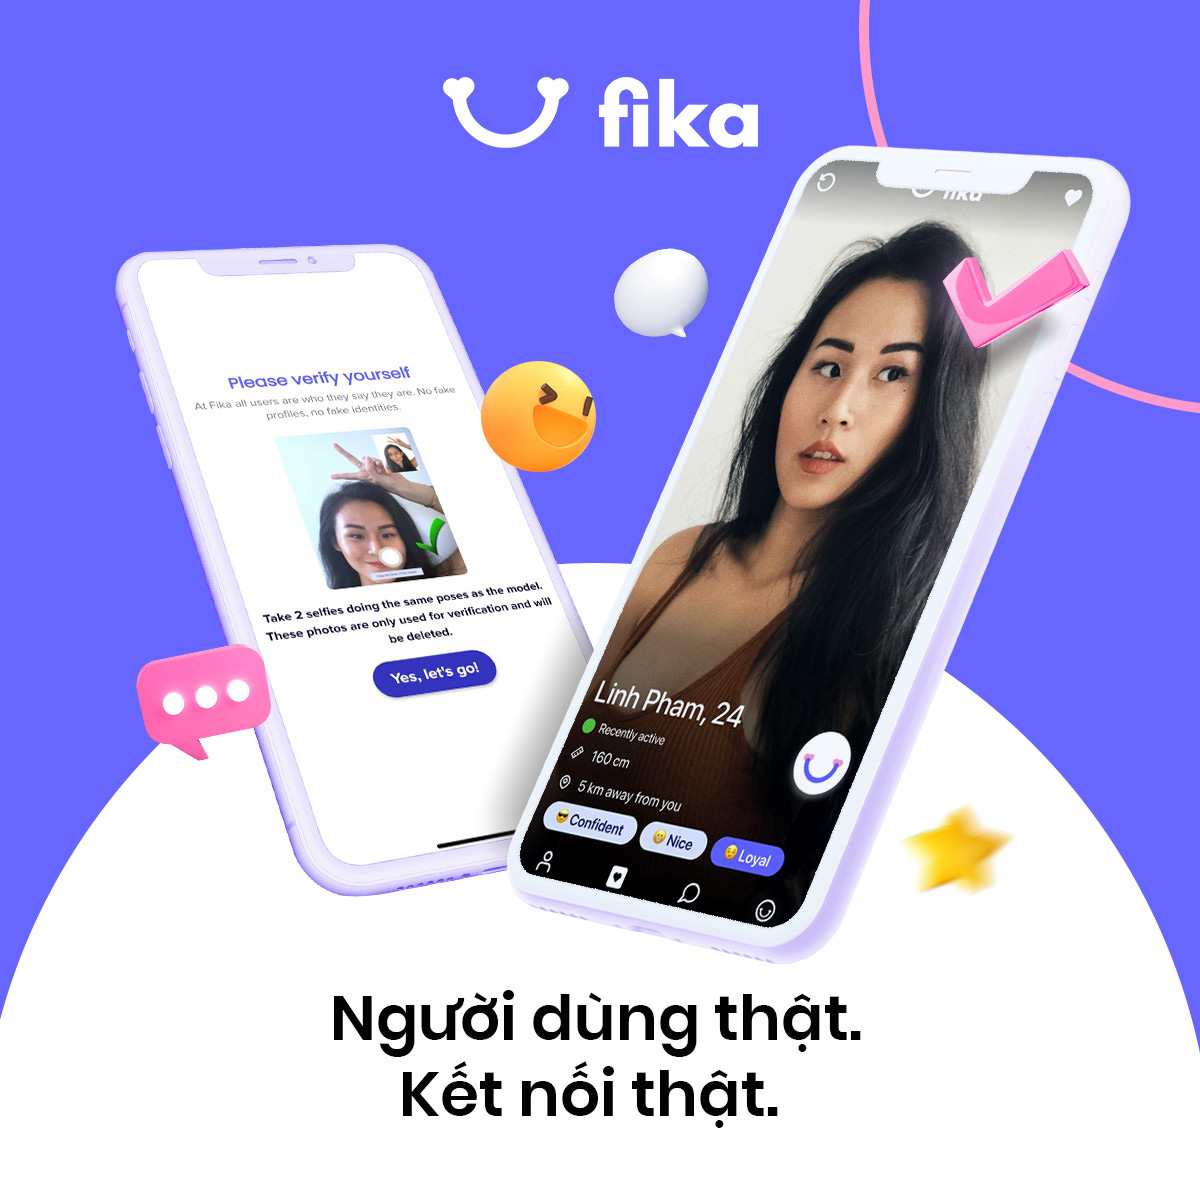 ViMoney-Fika - Startup ứng dụng hẹn hò của nữ founder gốc Việt huy động thành công 1,6 triệu USD vốn